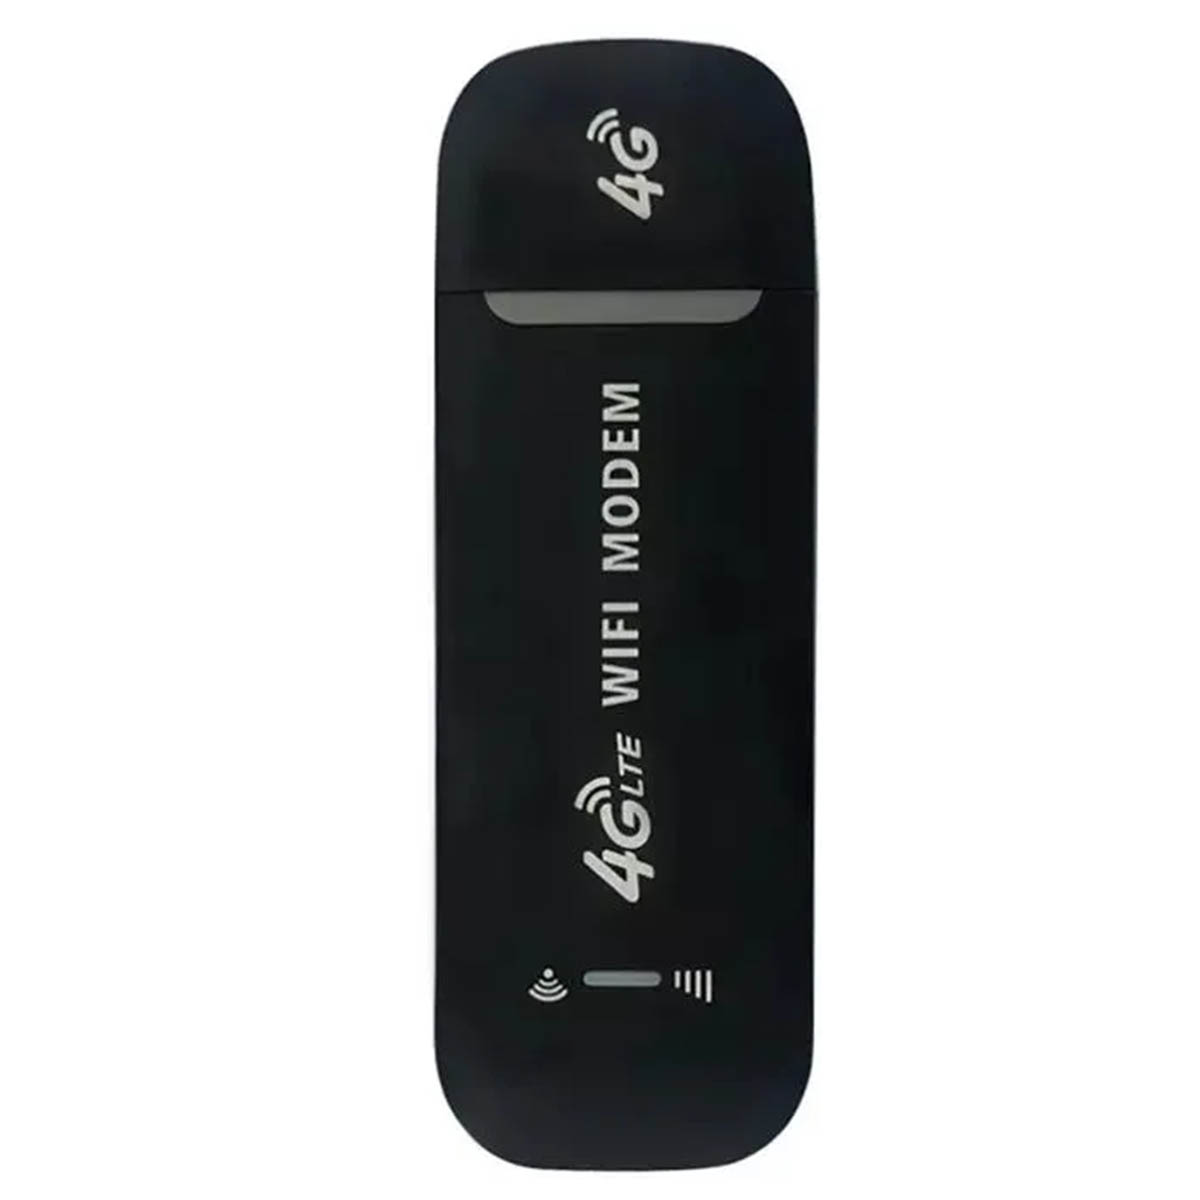 Модем USB 4G, с раздачей Wi-Fi, цвет черный